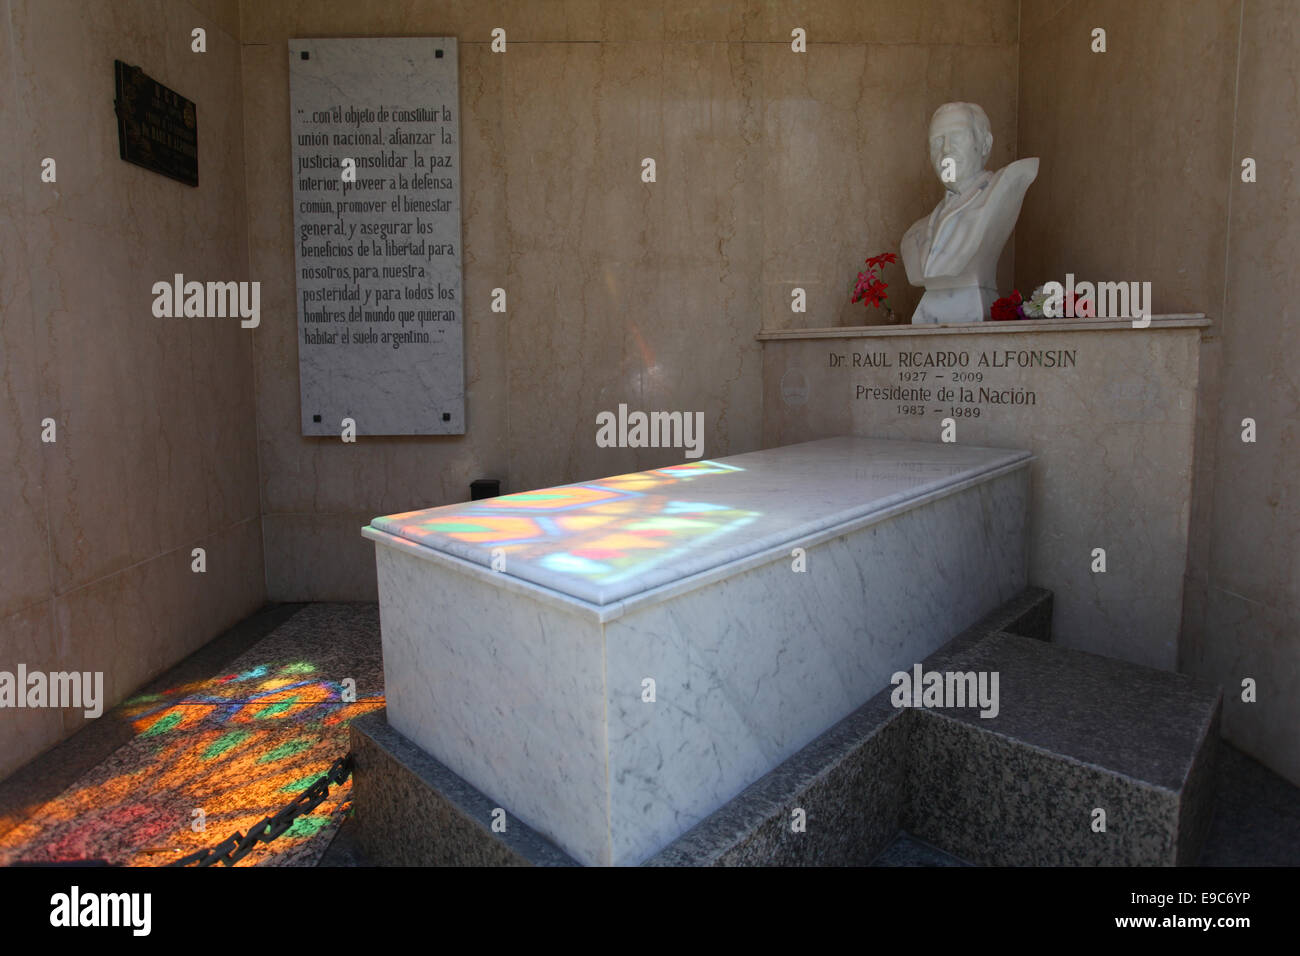 Grab des ehemaligen Präsidenten von Argentinien, "Raúl Ricardo Alfonsín'. Monumentaler Friedhof Recoleta, Buenos Aires, Argentinien. Stockfoto